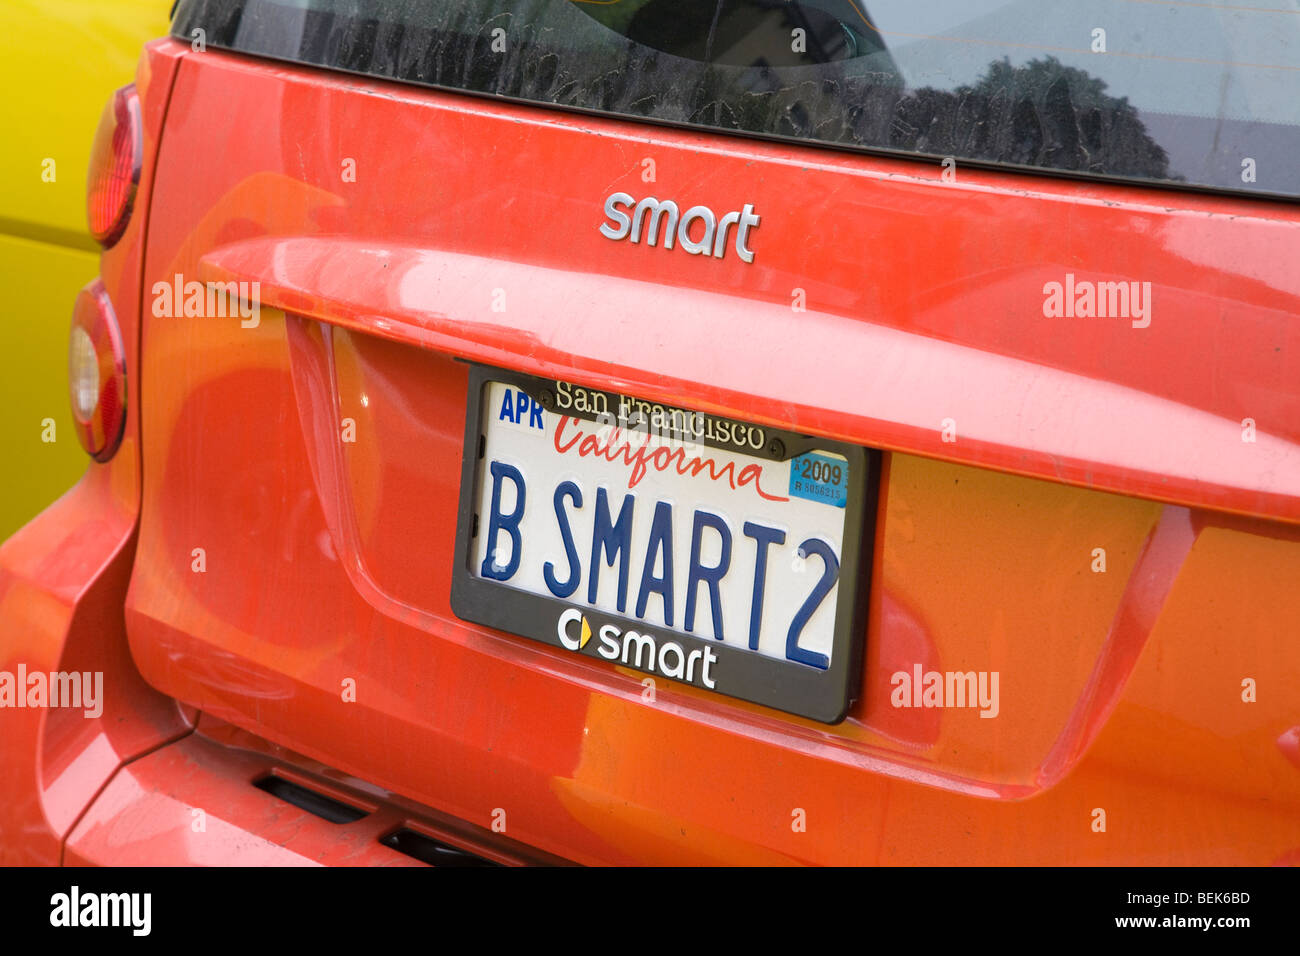 B SMART2 (sein Smart zu) Kfz-Kennzeichen. Lombard Street, eine Auto-Club-Rallye. San Francisco, Kalifornien, USA Stockfoto